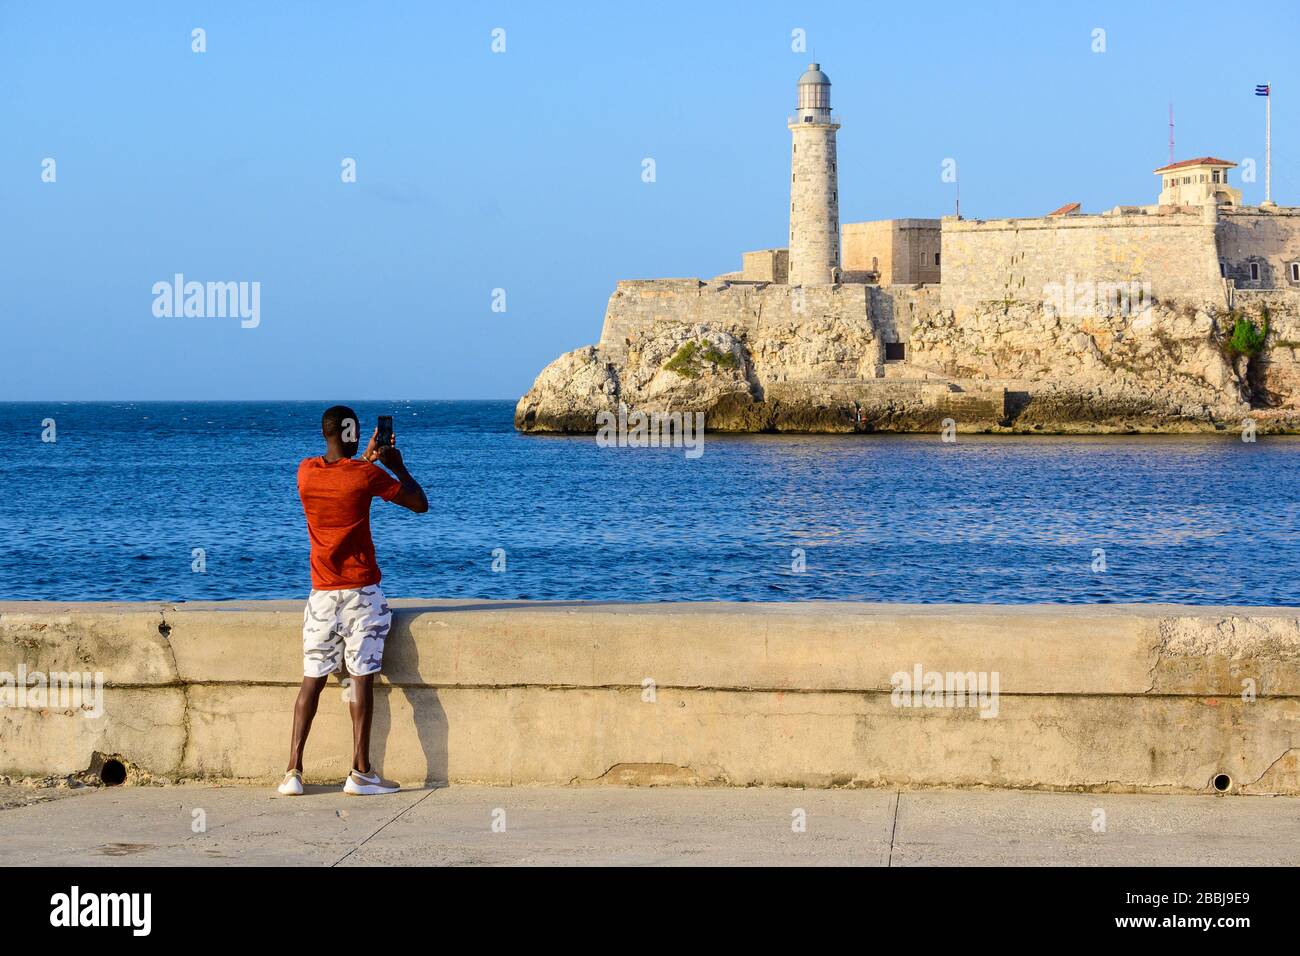 Man photographing El Castillo de los Tres Reyes Magos del Morro or simply “El Morro” in the distance,  Havana Vieja, Cuba Stock Photo